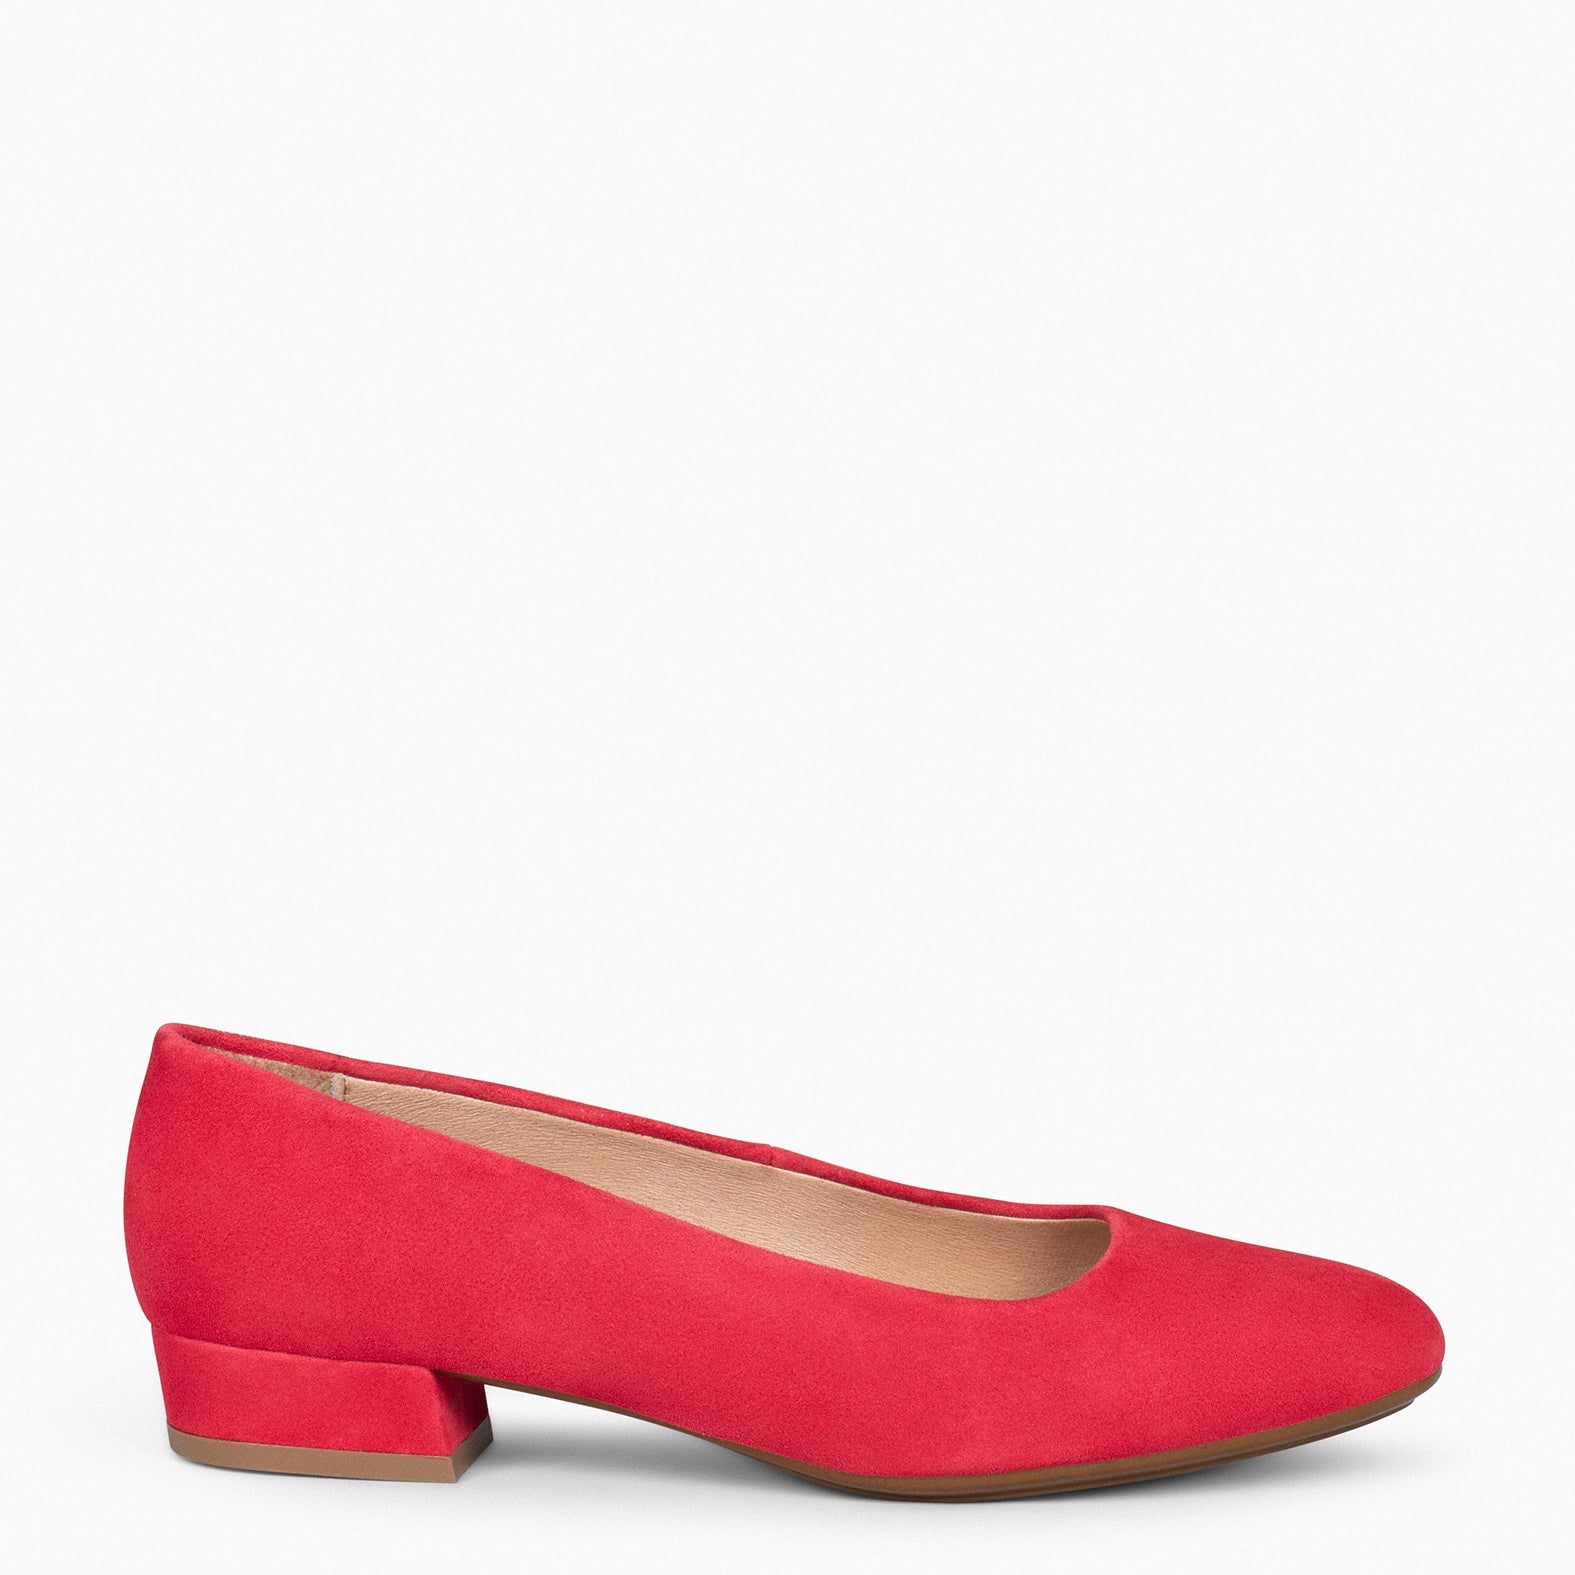 Zapatillas · Rojos · Moda mujer · El Corte Inglés (83)